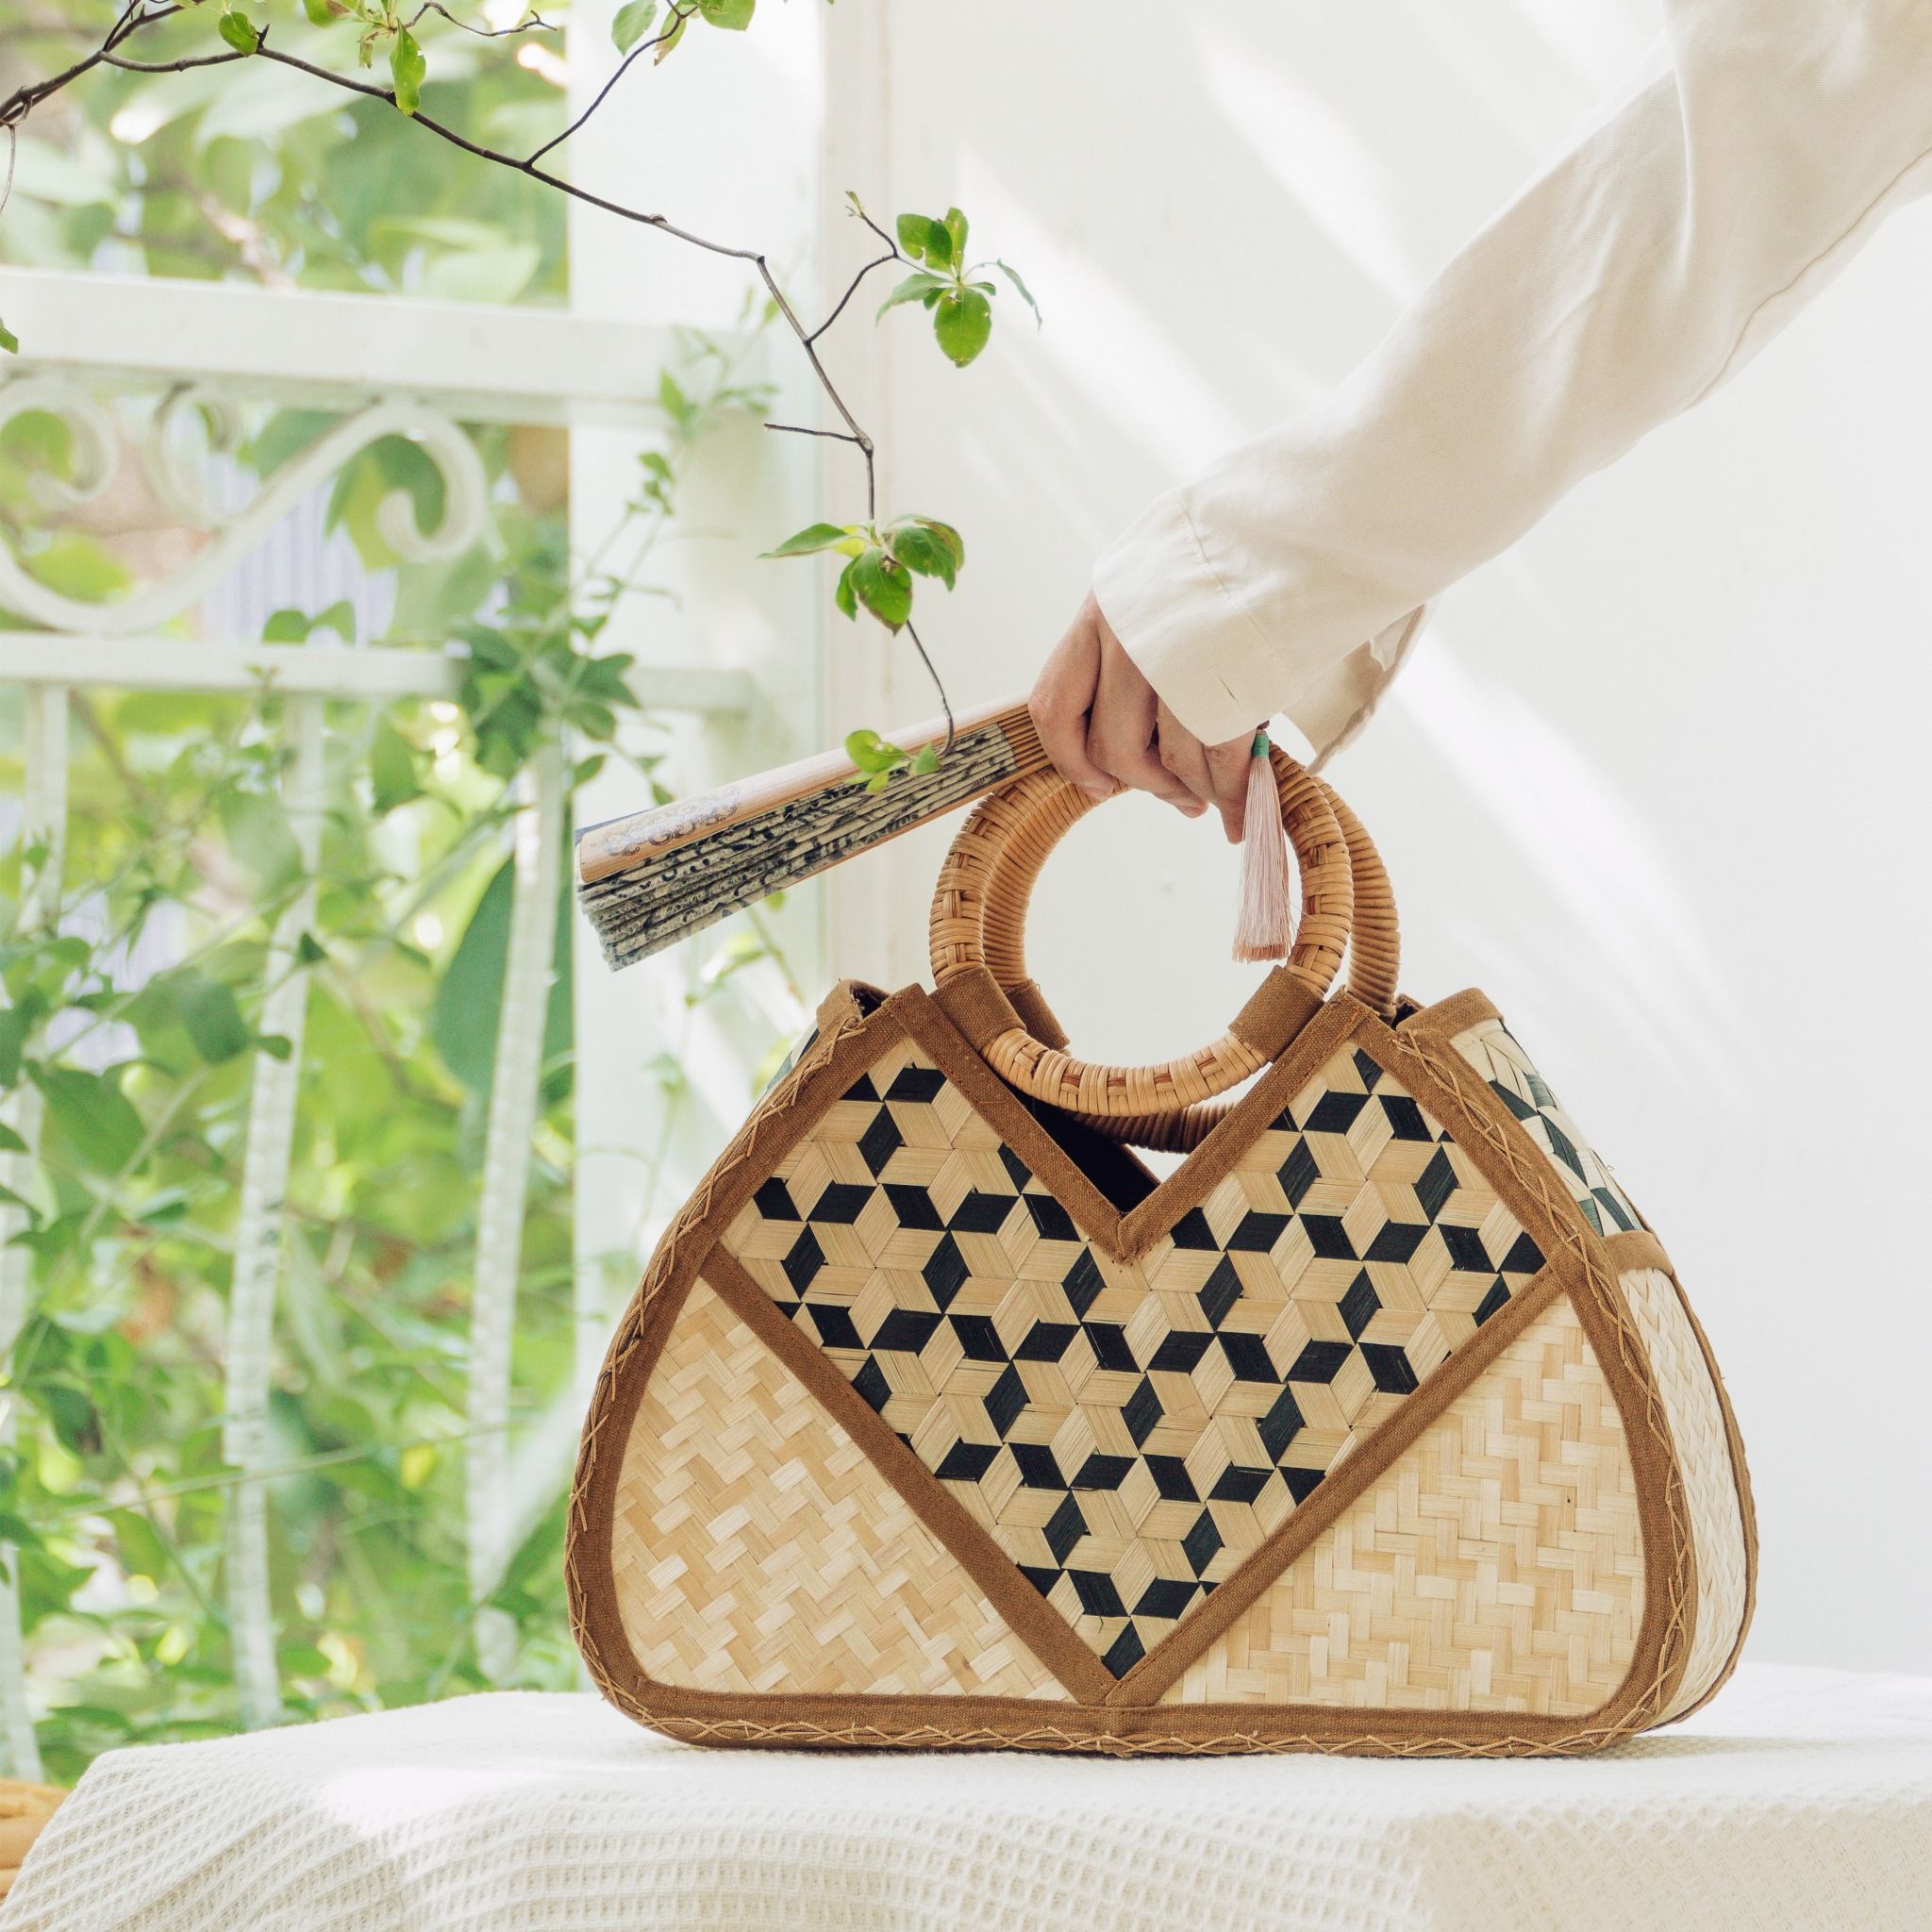  Túi vải họa tiết tre đan thủ công quai cầm gỗ kiểu dáng thanh lịch trang nhã - Mã sản phẩm HB04 